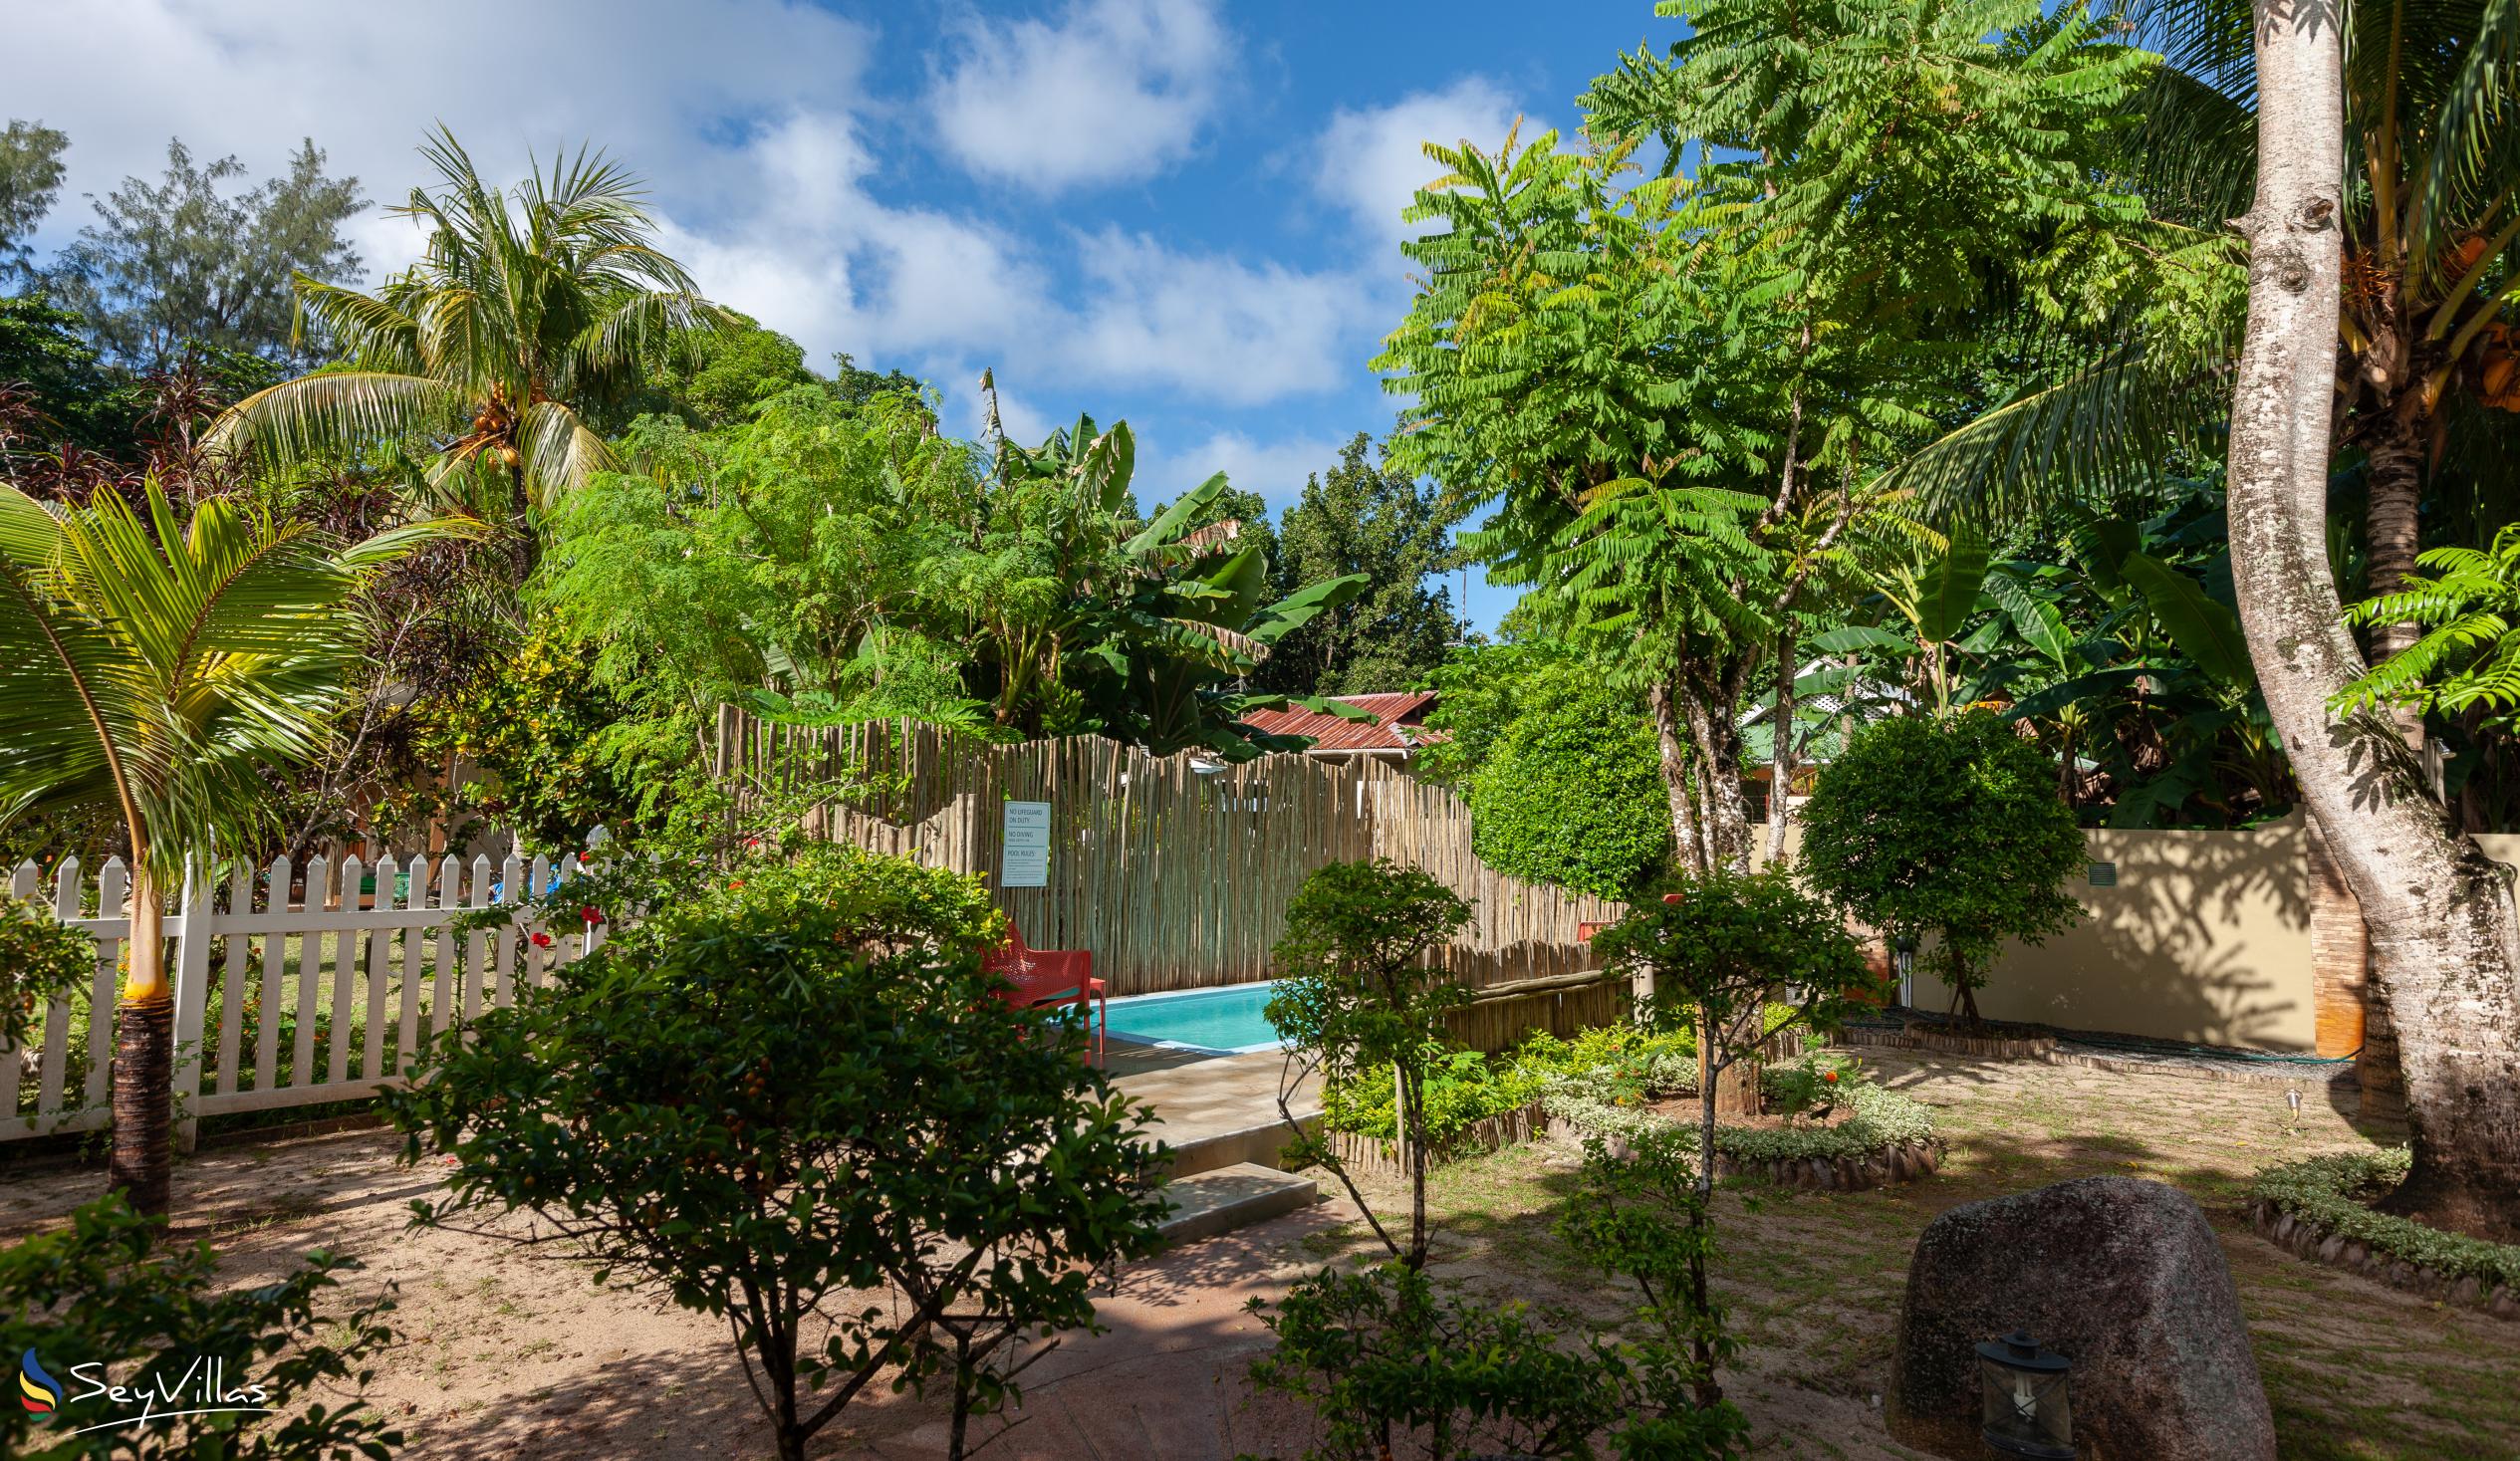 Photo 82: Casa de Leela - 2-Bedroom Luxury Bungalow with Private Plunge Pool - La Digue (Seychelles)